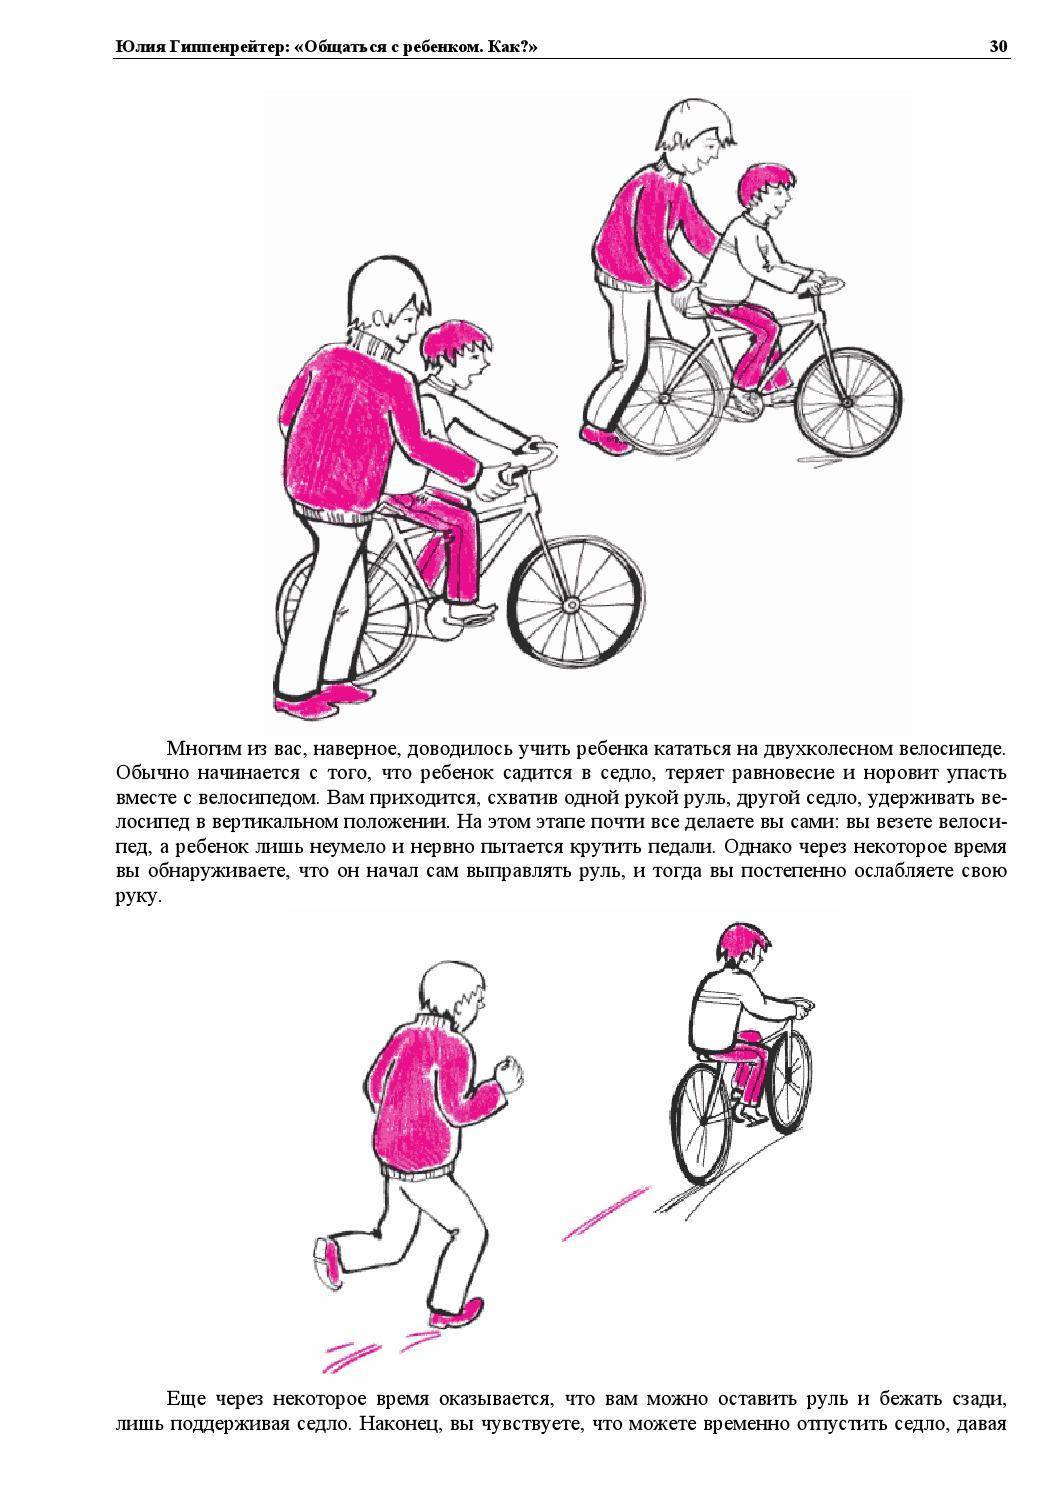 Как научить ребенка кататься на велосипеде: основные правила, методики обучения и важные нюансы, которые помогут малышу быстрее овладеть транспортом